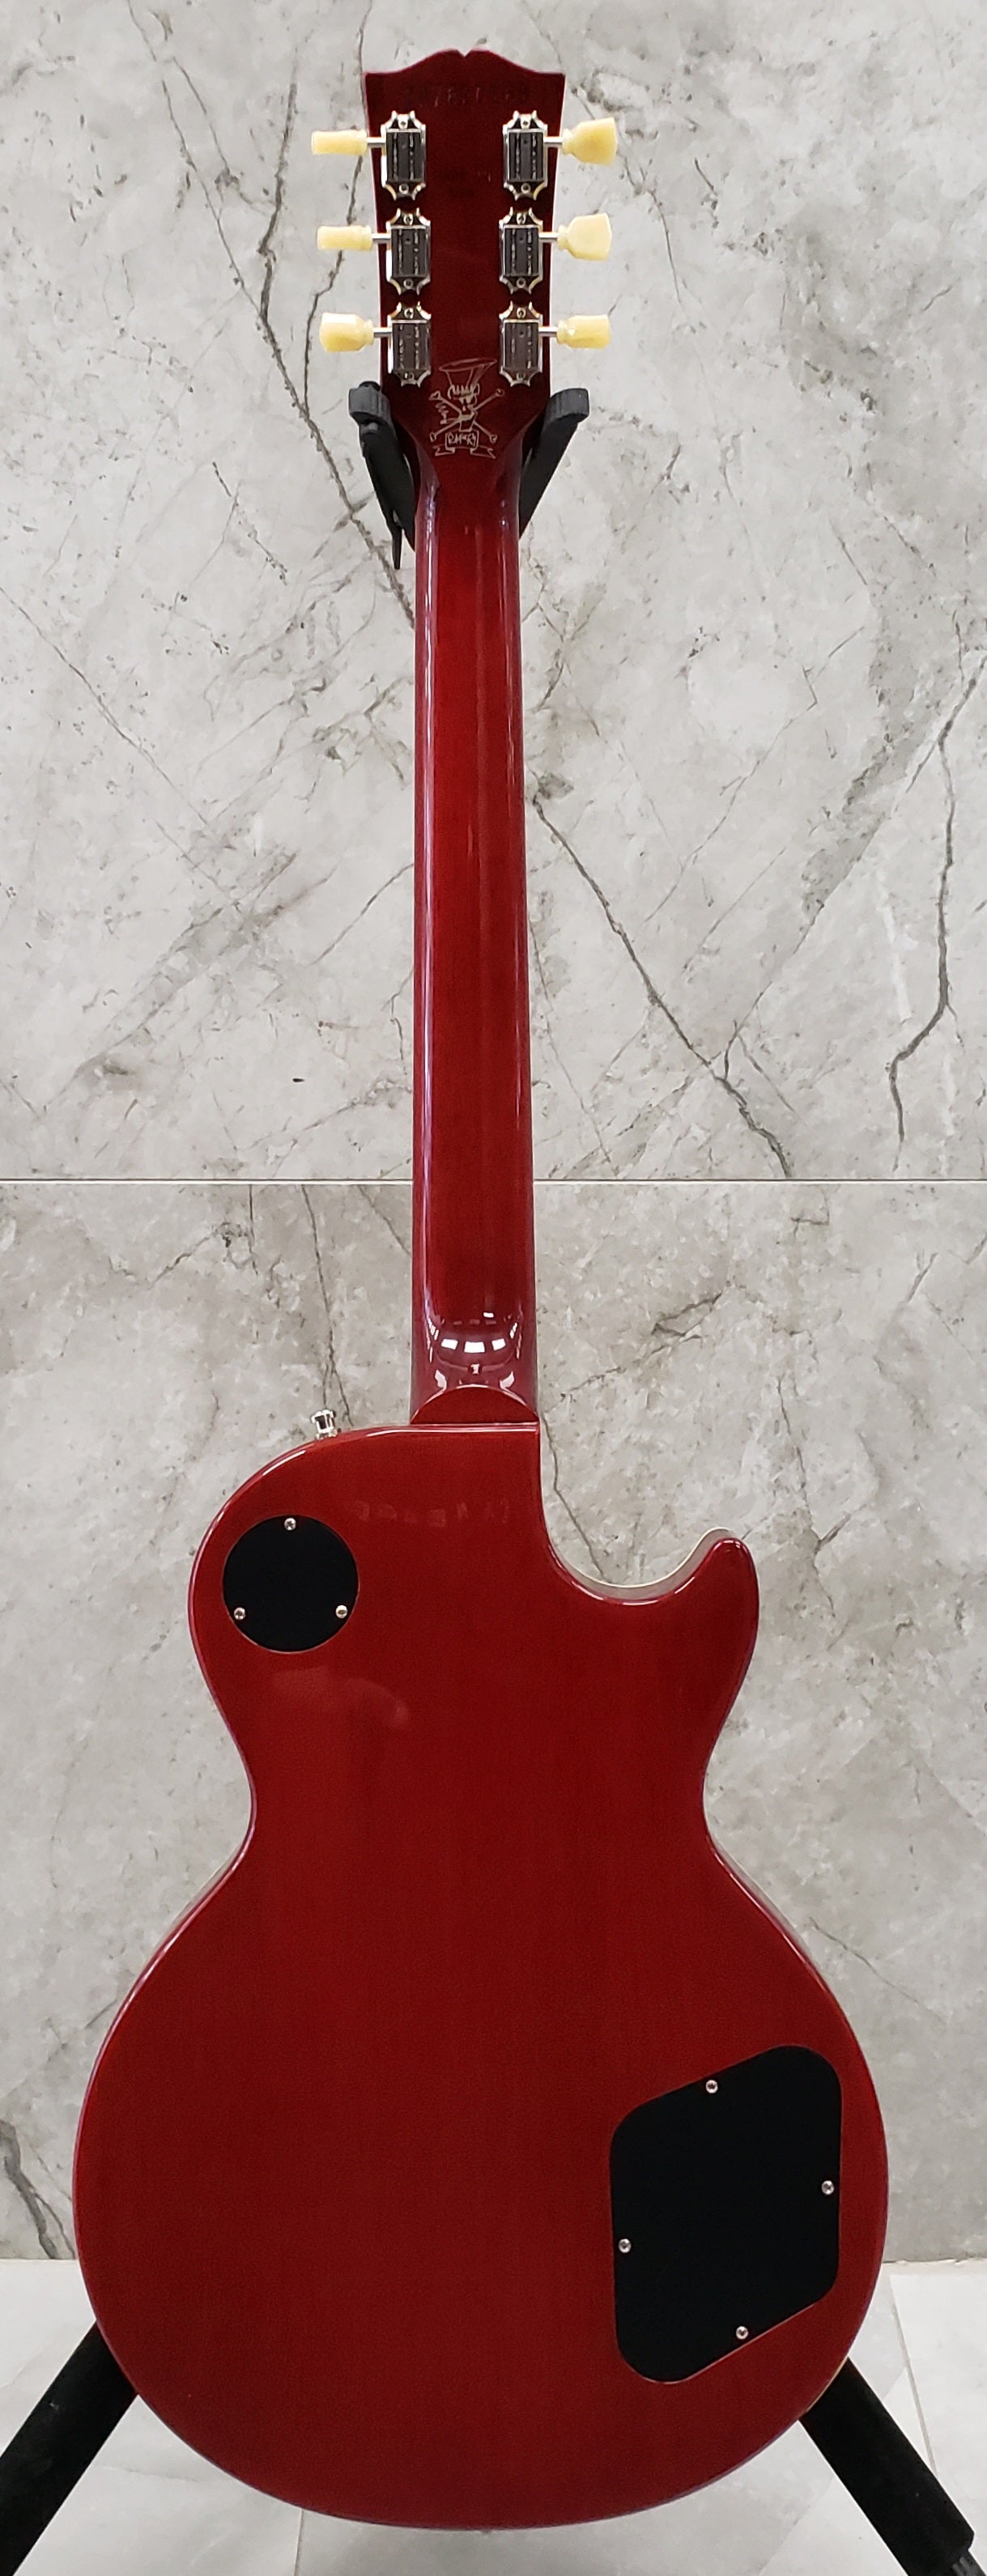 Gibson Slash Les Paul Standard Left Handed - Appetite Amber LPSS00APNHLH